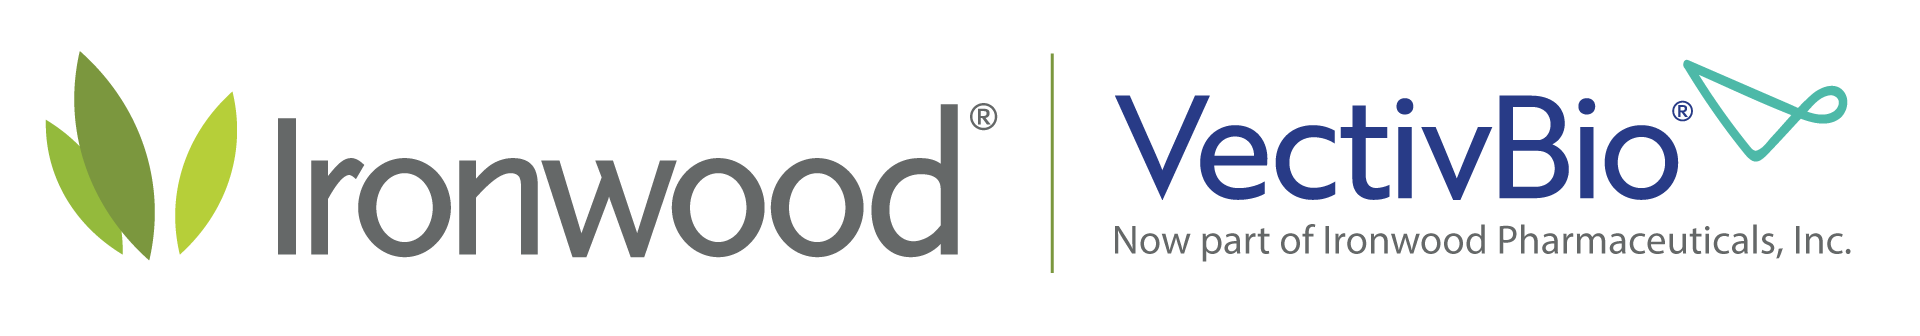 Ironwood/VectivBio logo